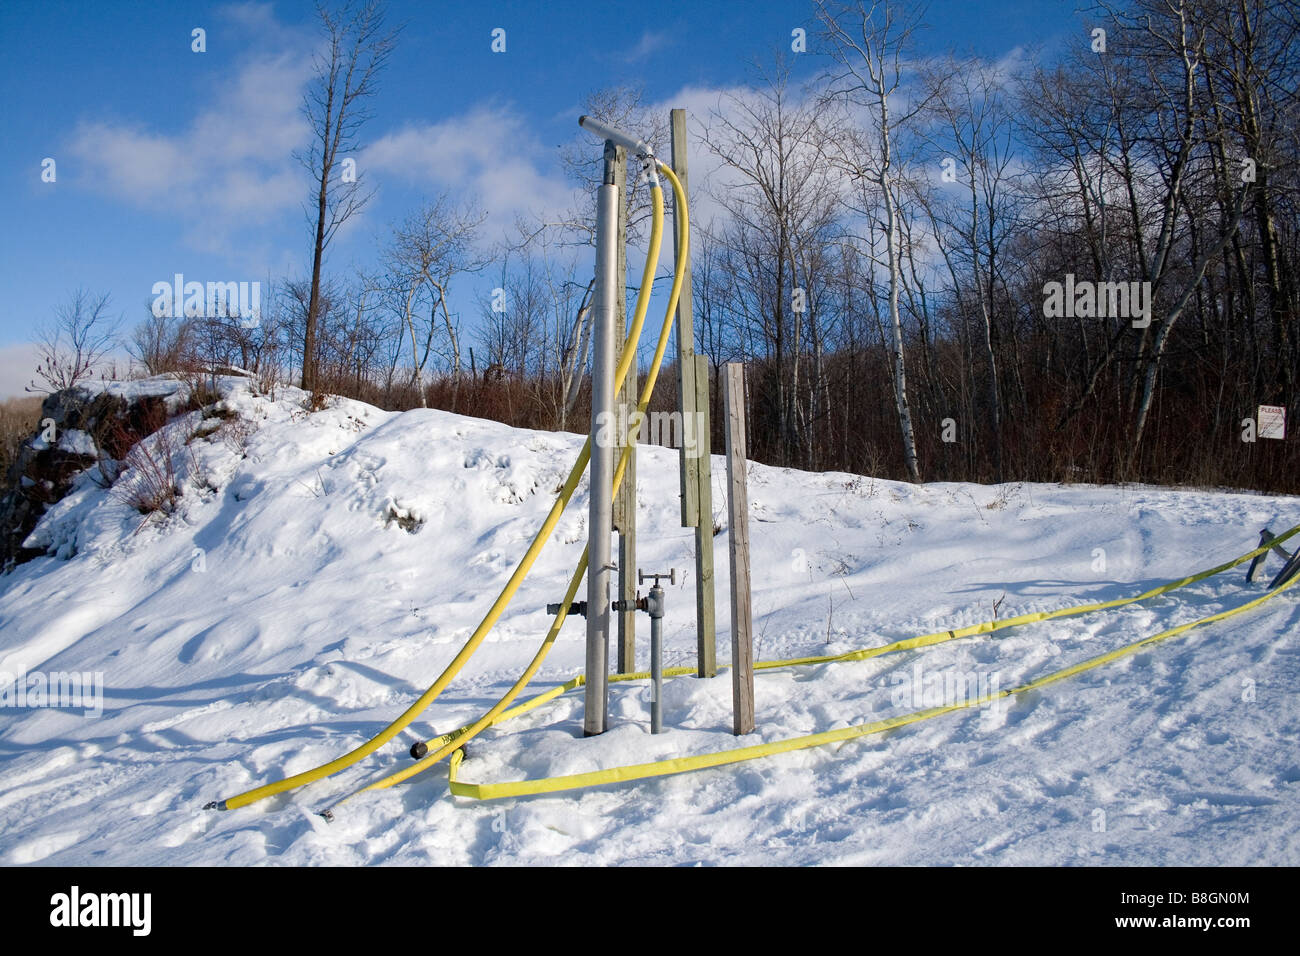 https://c8.alamy.com/comp/B8GN0M/snowmaking-hose-on-slope-at-glen-eden-ski-resort-B8GN0M.jpg